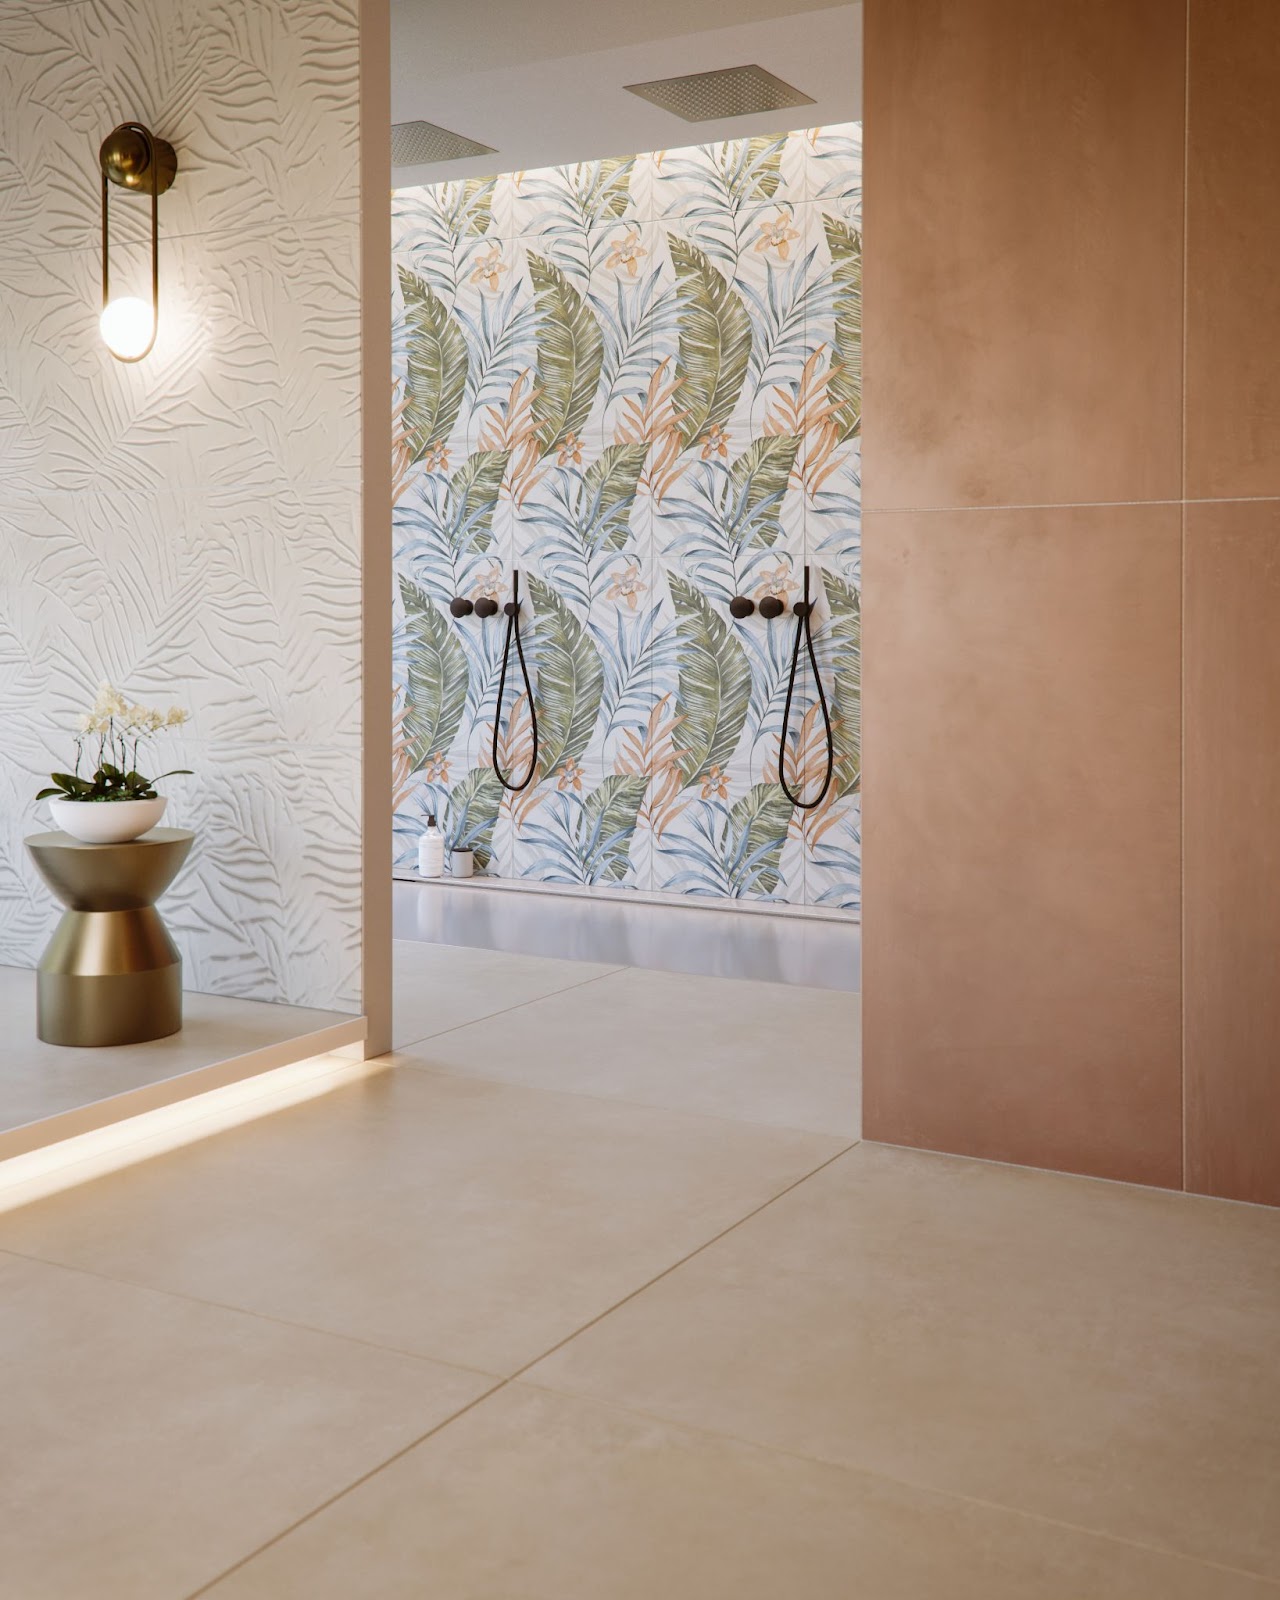 Ceramiche a posa orizzontale e verticale nella sala da bagno realizzata con prodotti Ceramica Rondine